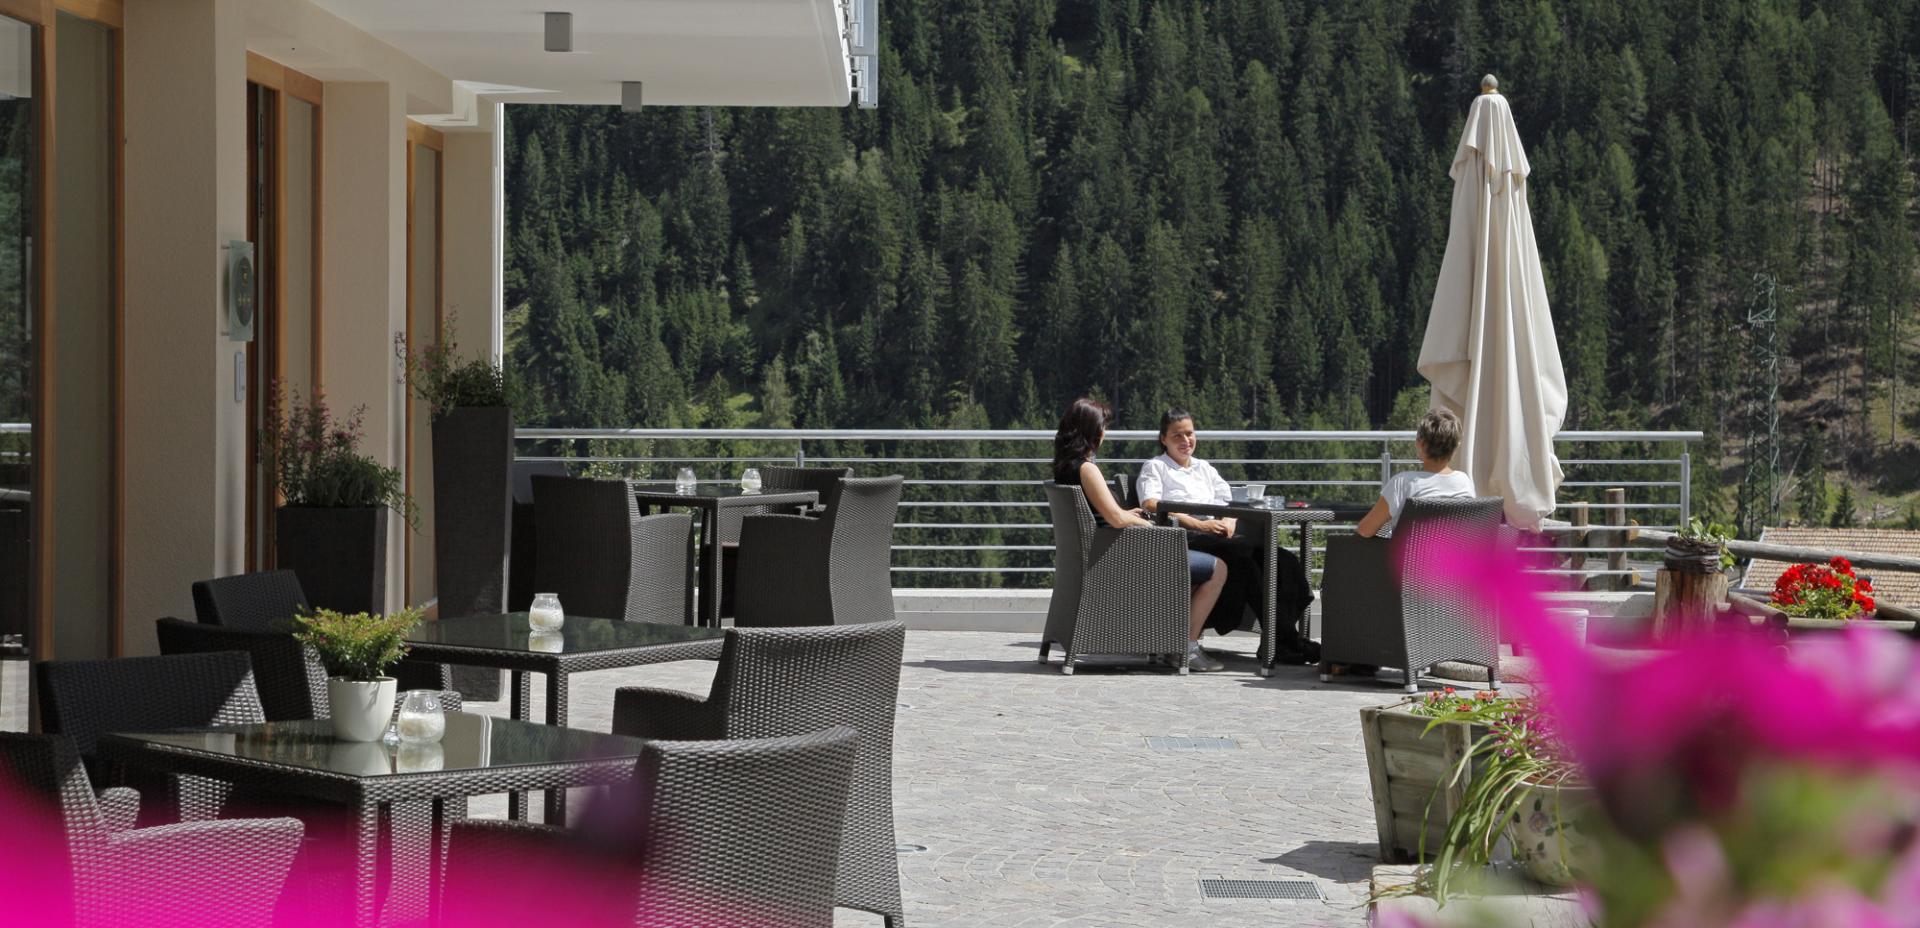 La terrazza soleggiata del Vital-Hotel Rainer